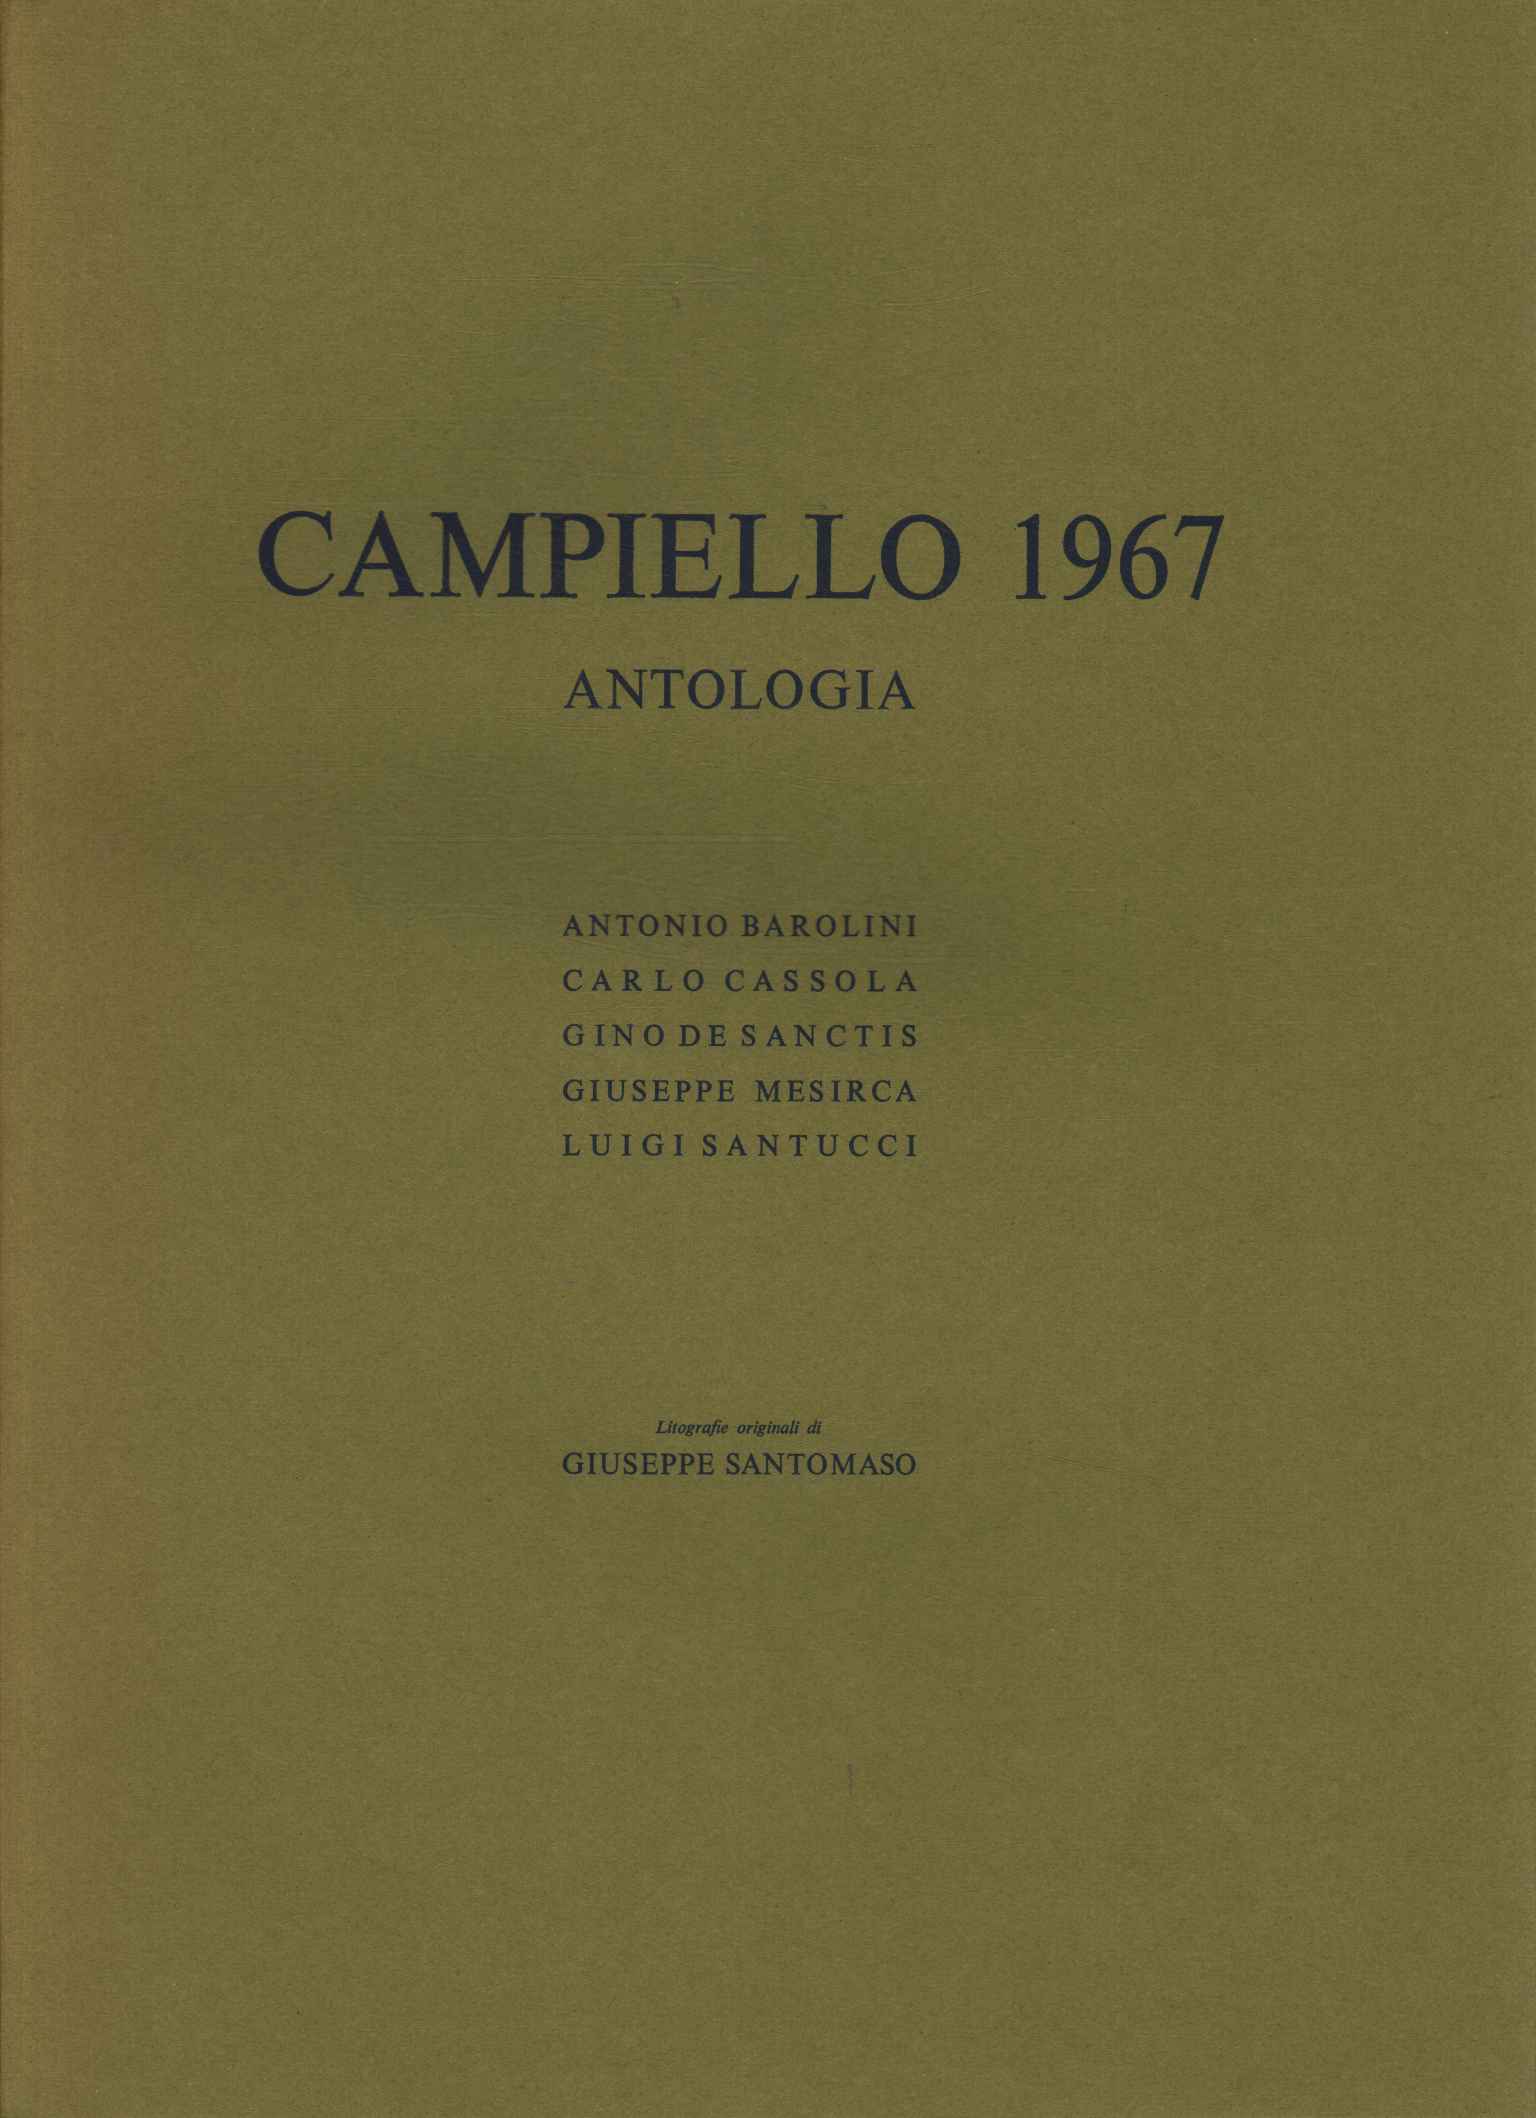 Anthologie von Campiello 1967